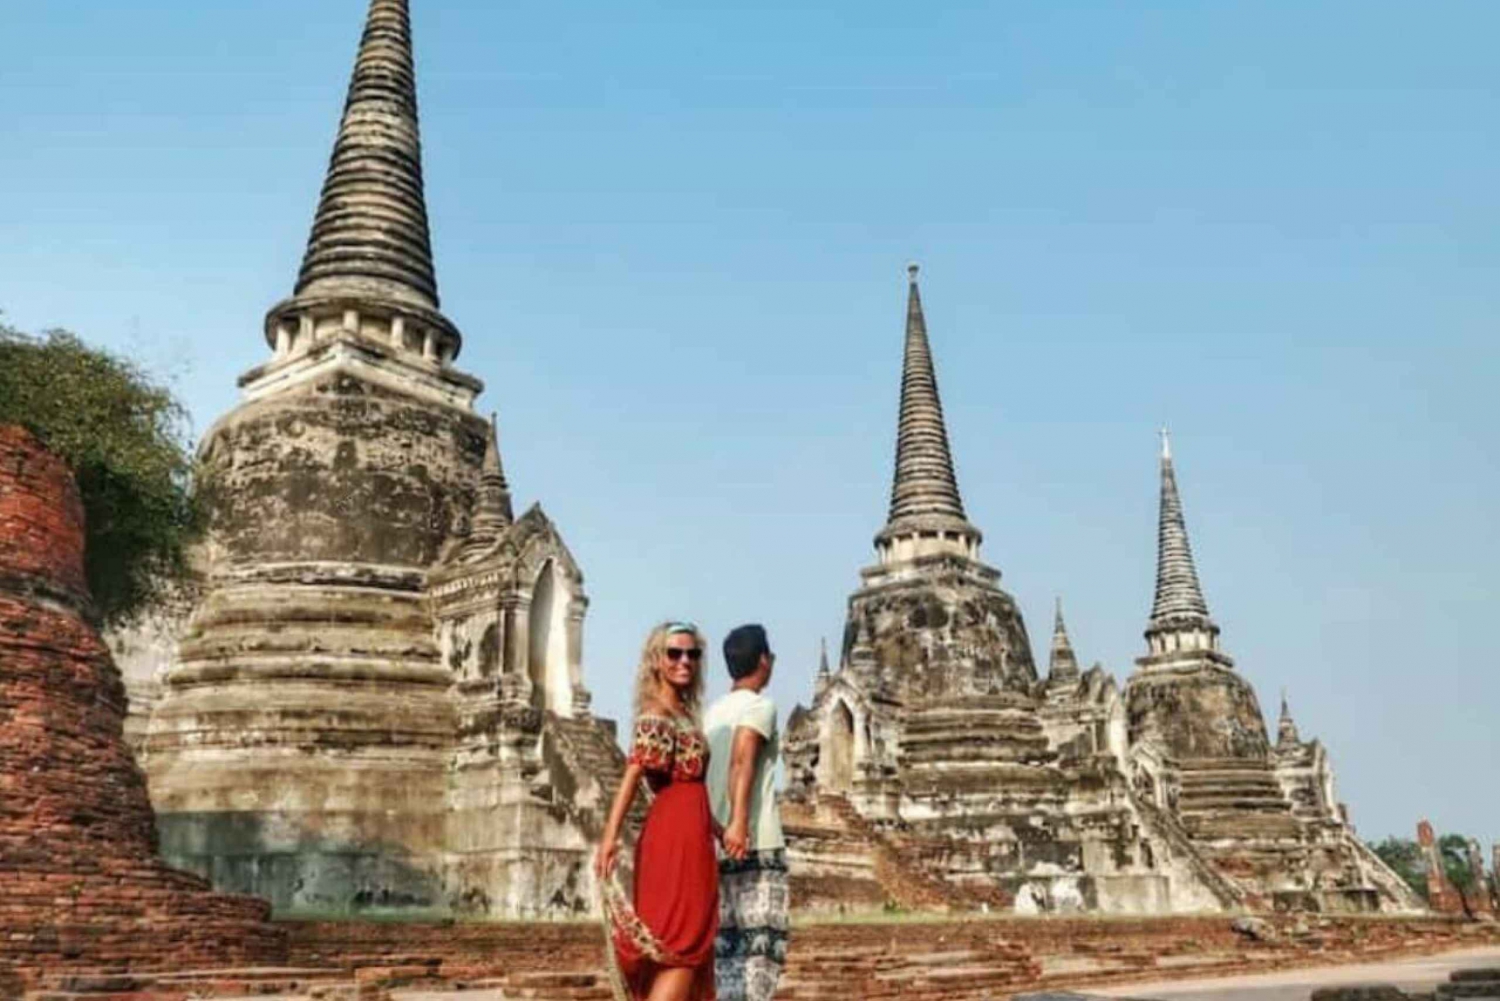 Инстаграм-тур по древнему городу Бангкок Аюттхая